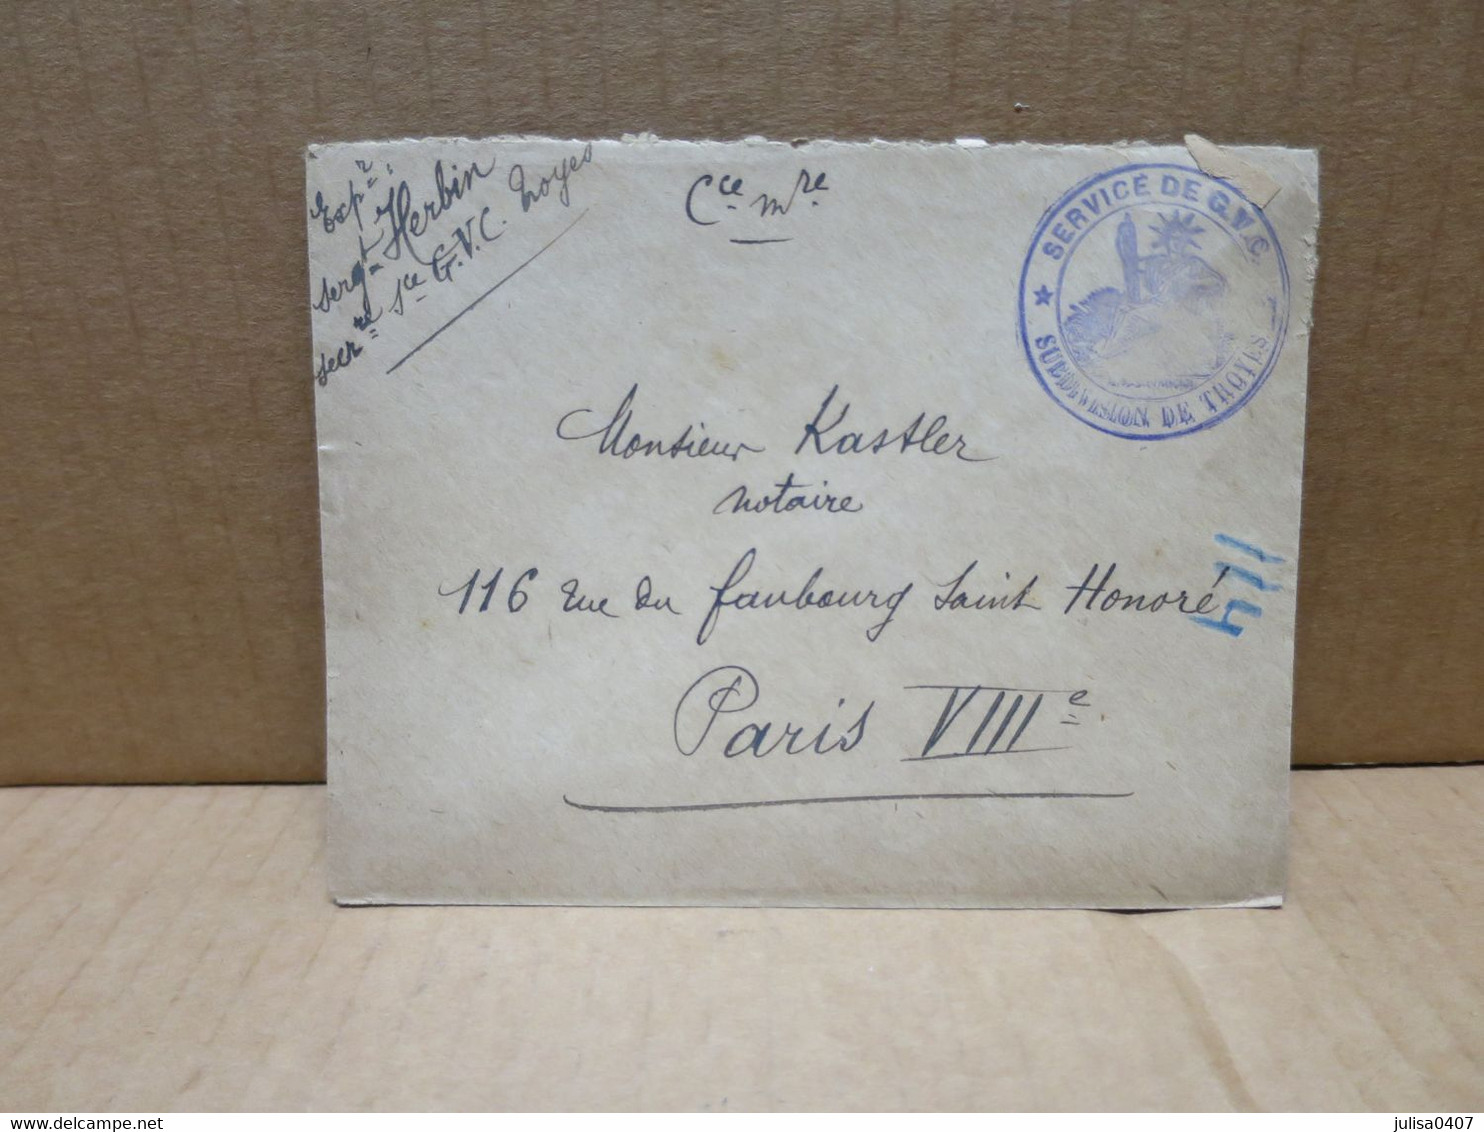 TROYES (10) Enveloppe Avec Cachet Militaire Service De GVC - War Stamps